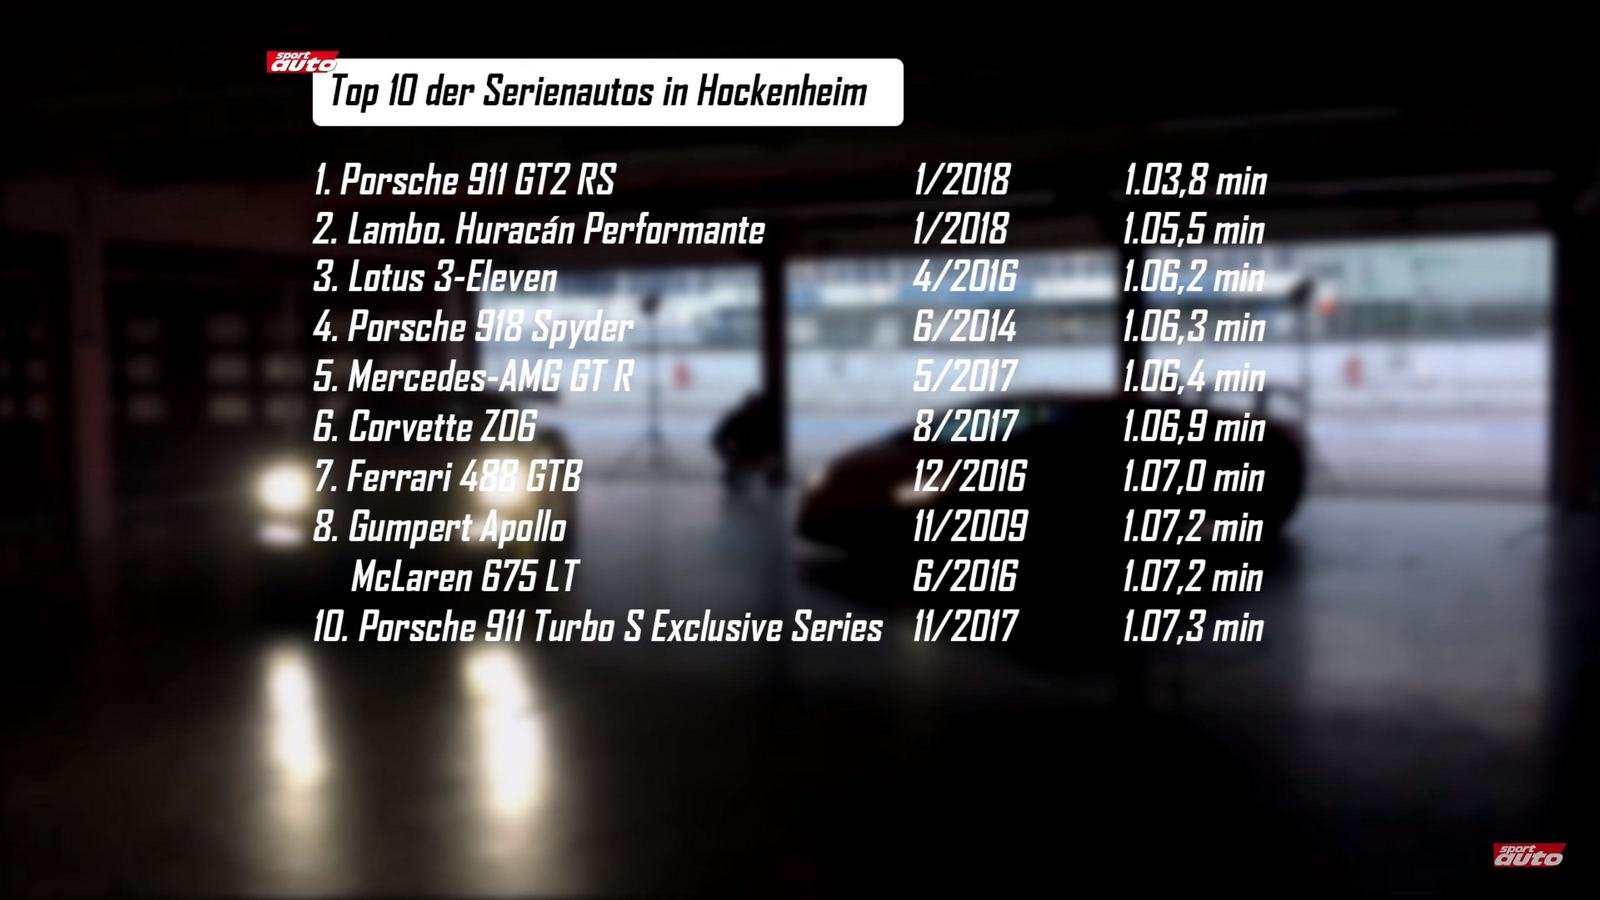 Porsche 911 GT2 RS vs Lambo Huracan Performante 2